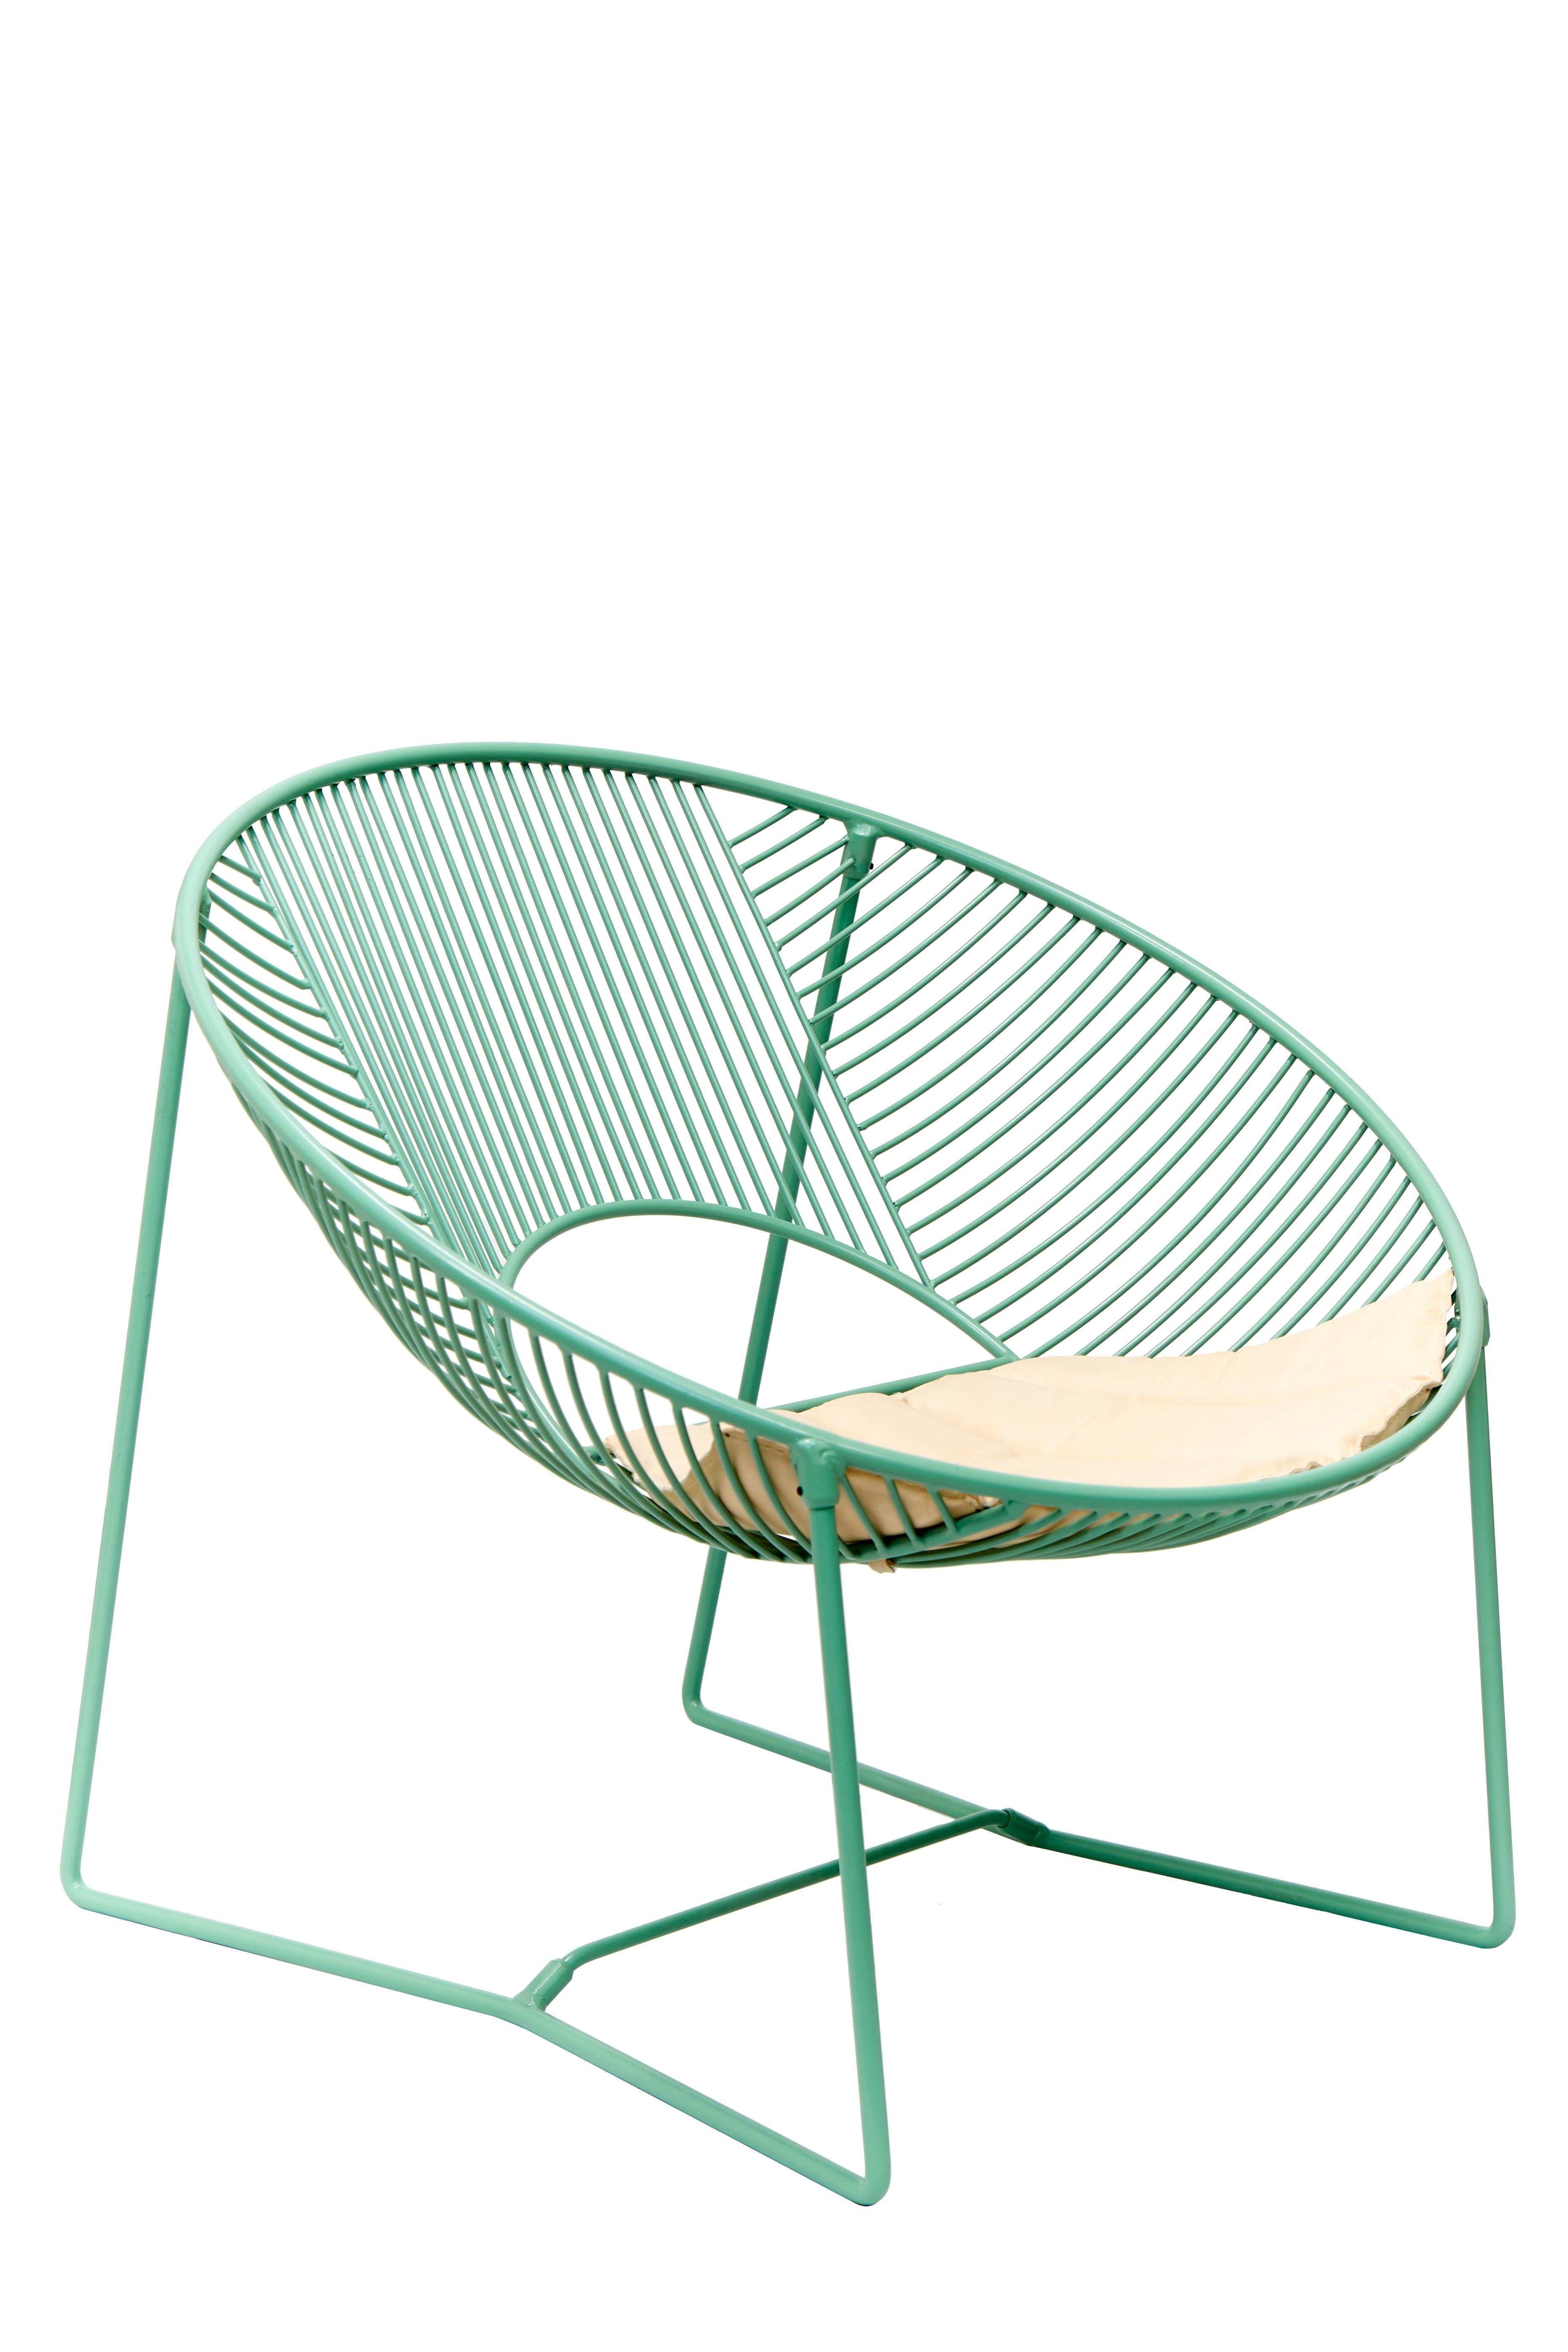 Cette chaise longue d'extérieur est une création unique de León León Design de Mexico.
Il est doté d'une structure solide en acier peint par poudrage et peut être utilisé à l'intérieur ou à l'extérieur.

Fabriquée à la main en petites séries, chaque